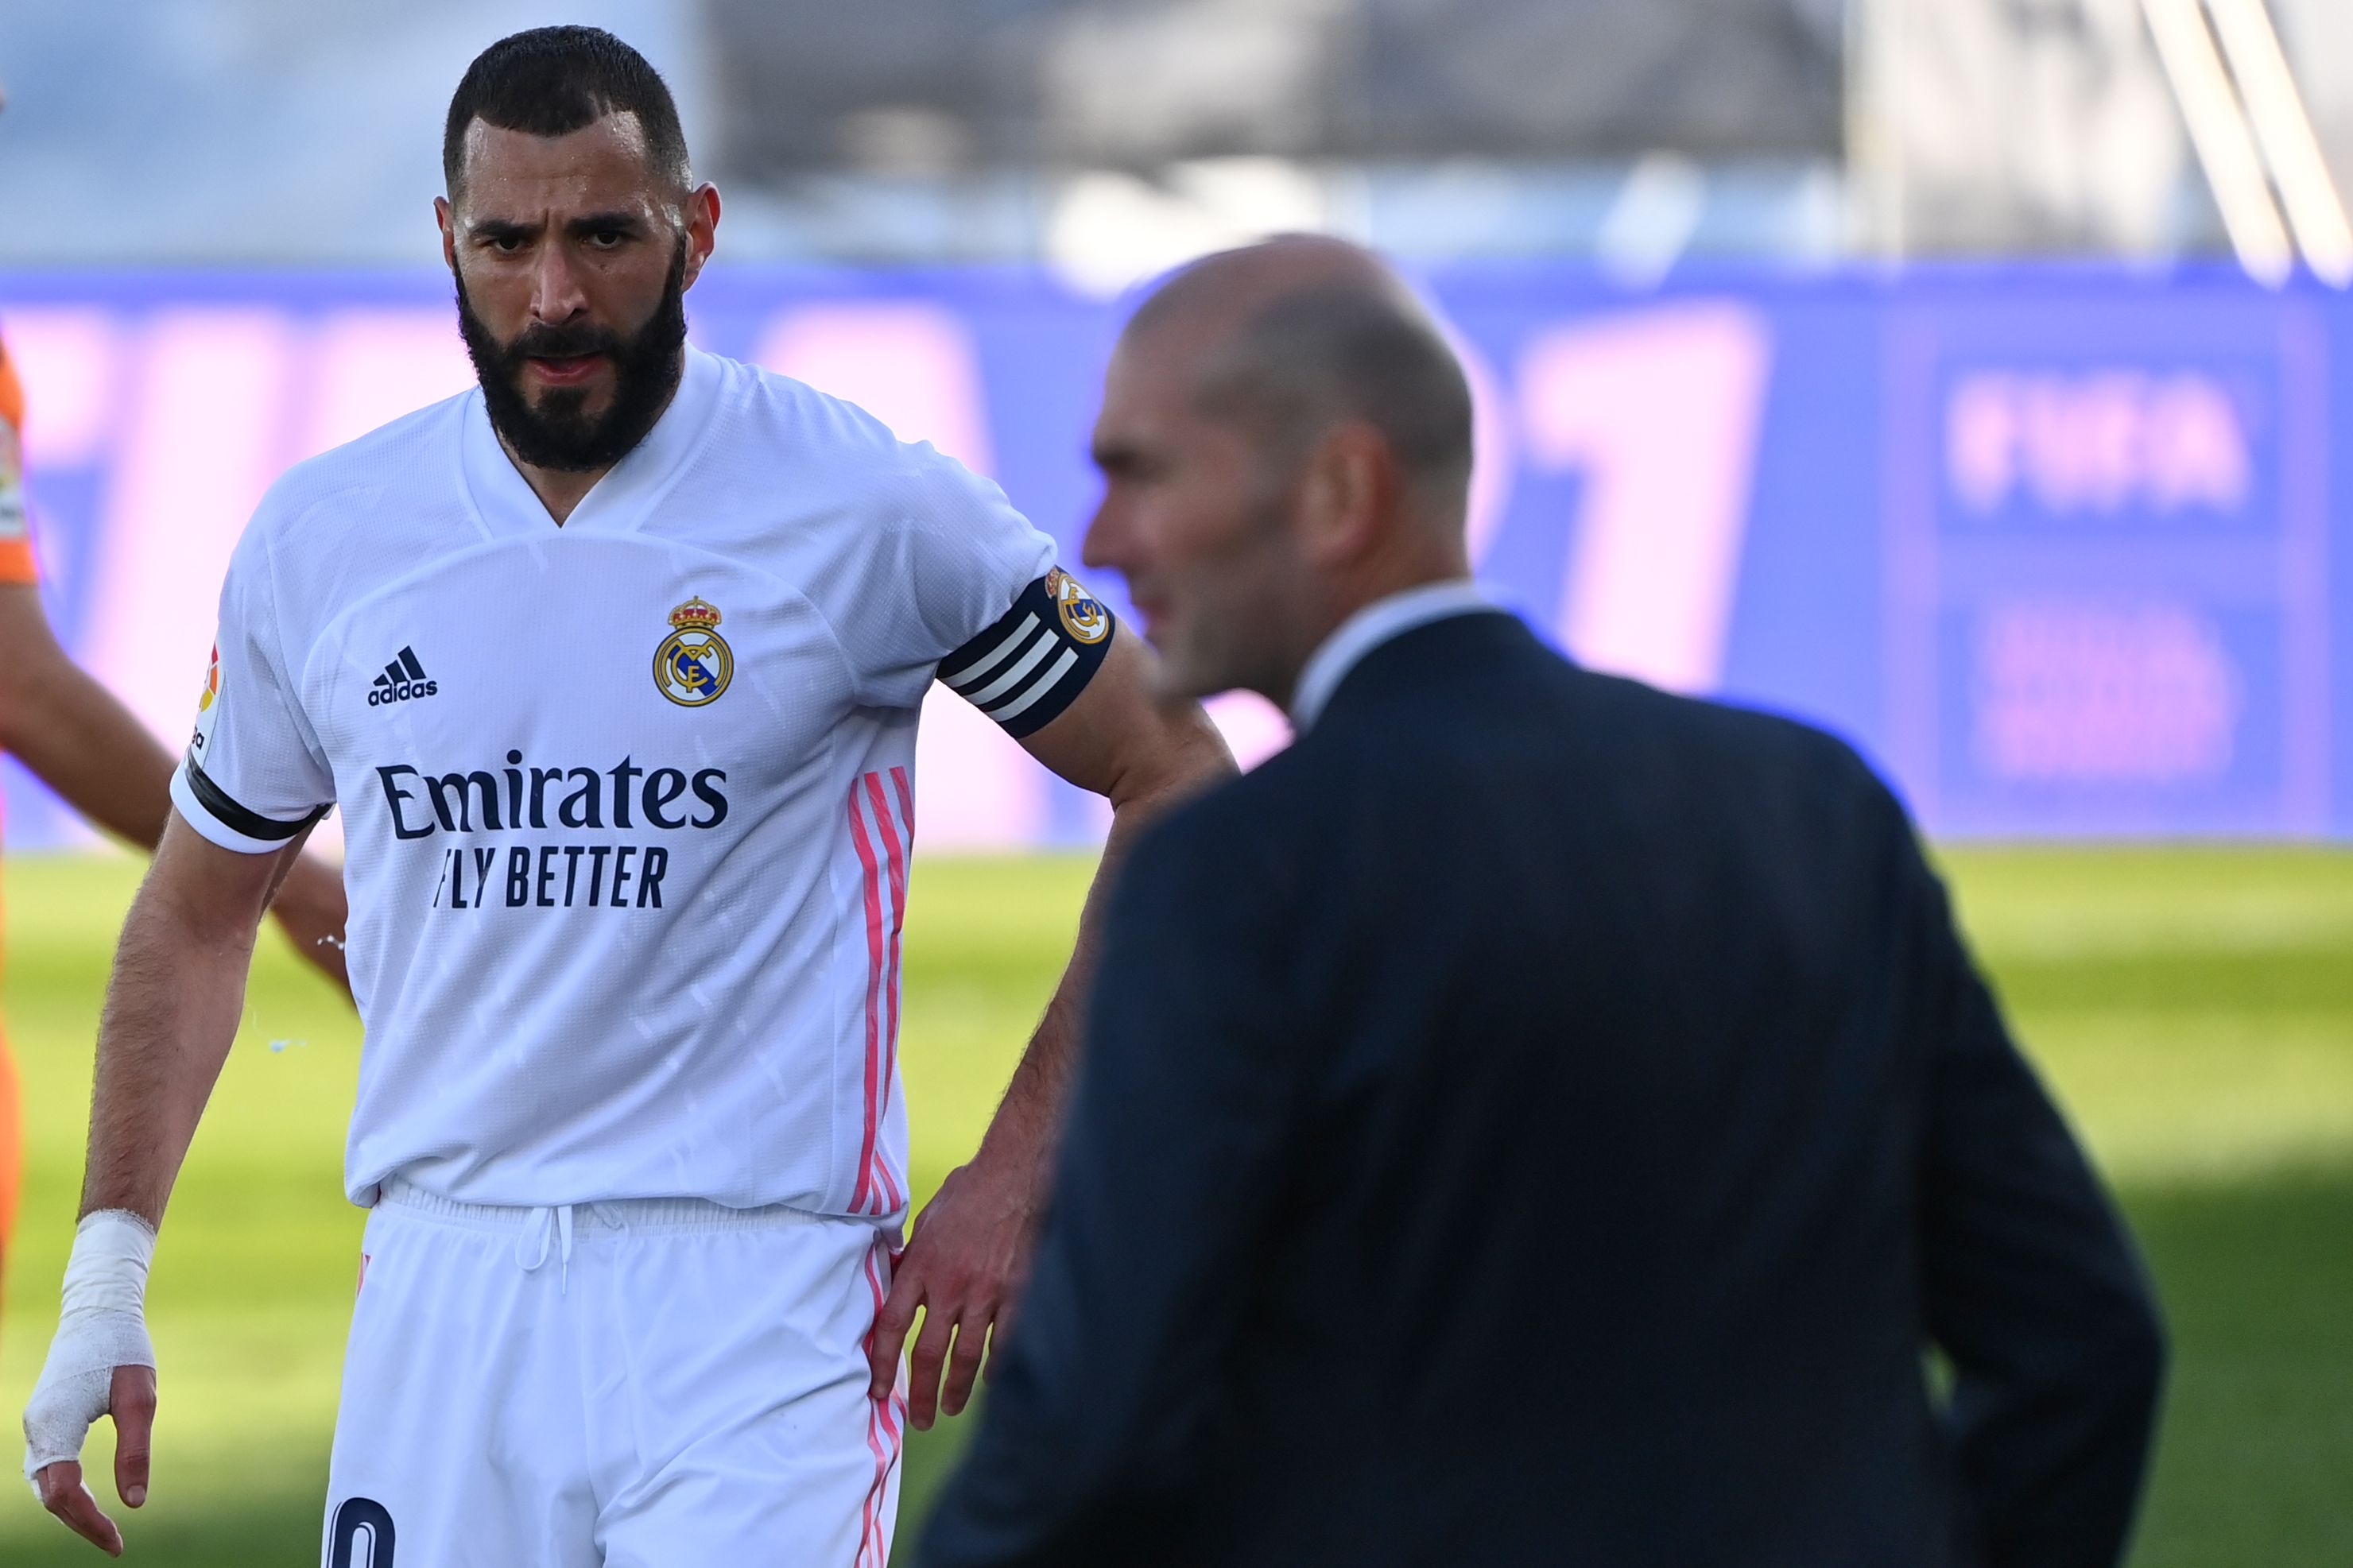 El técnico del Real Madrid, Zinedine Zidane, ha lamentado la lesión de su compatriota, Karim Benzema, goleador de su equipo. Foto Prensa Libre: AFP.